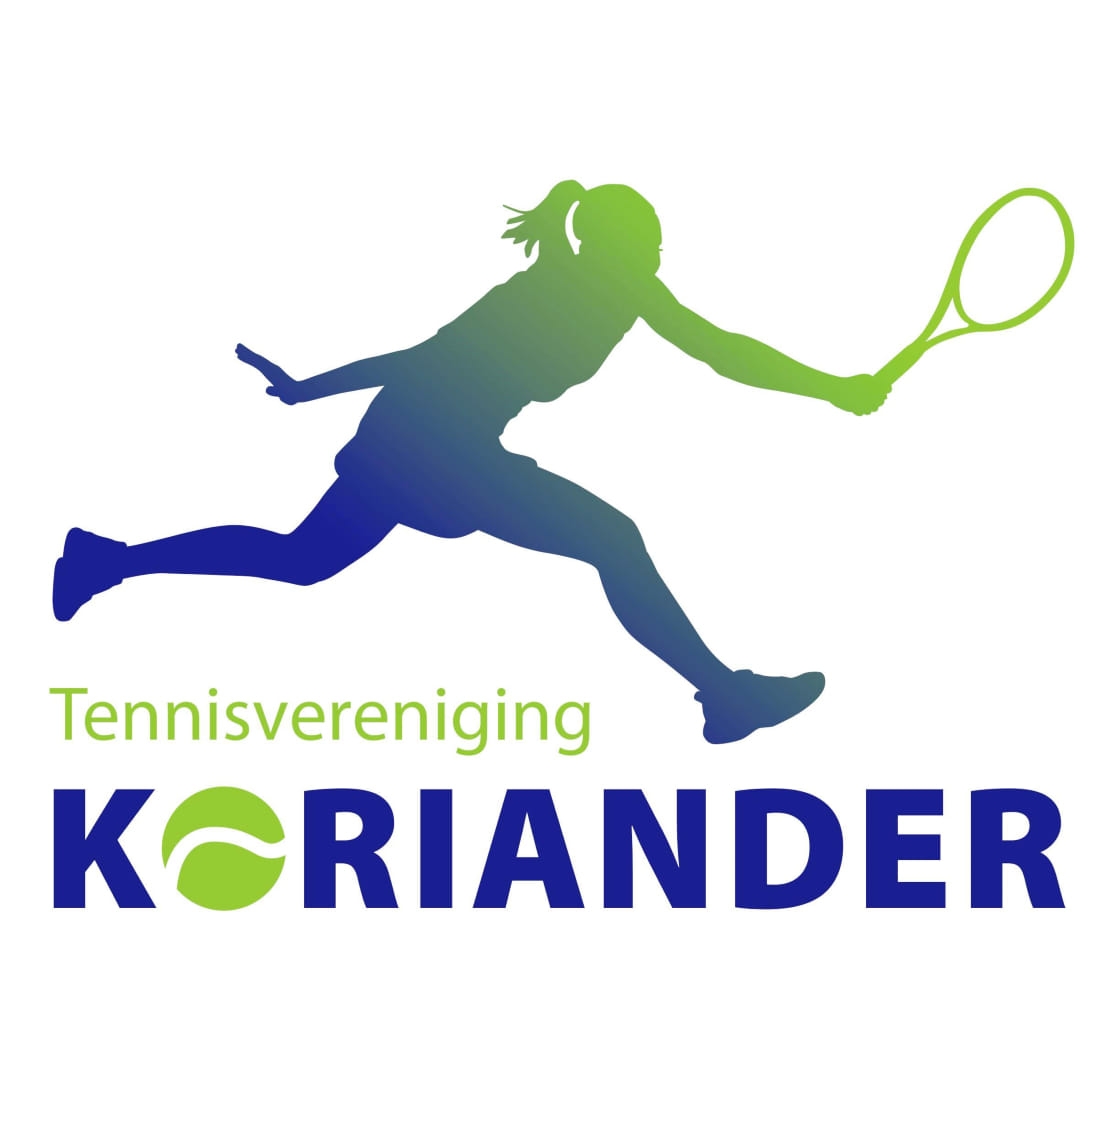 Profile image of venue Tennisvereniging Koriander